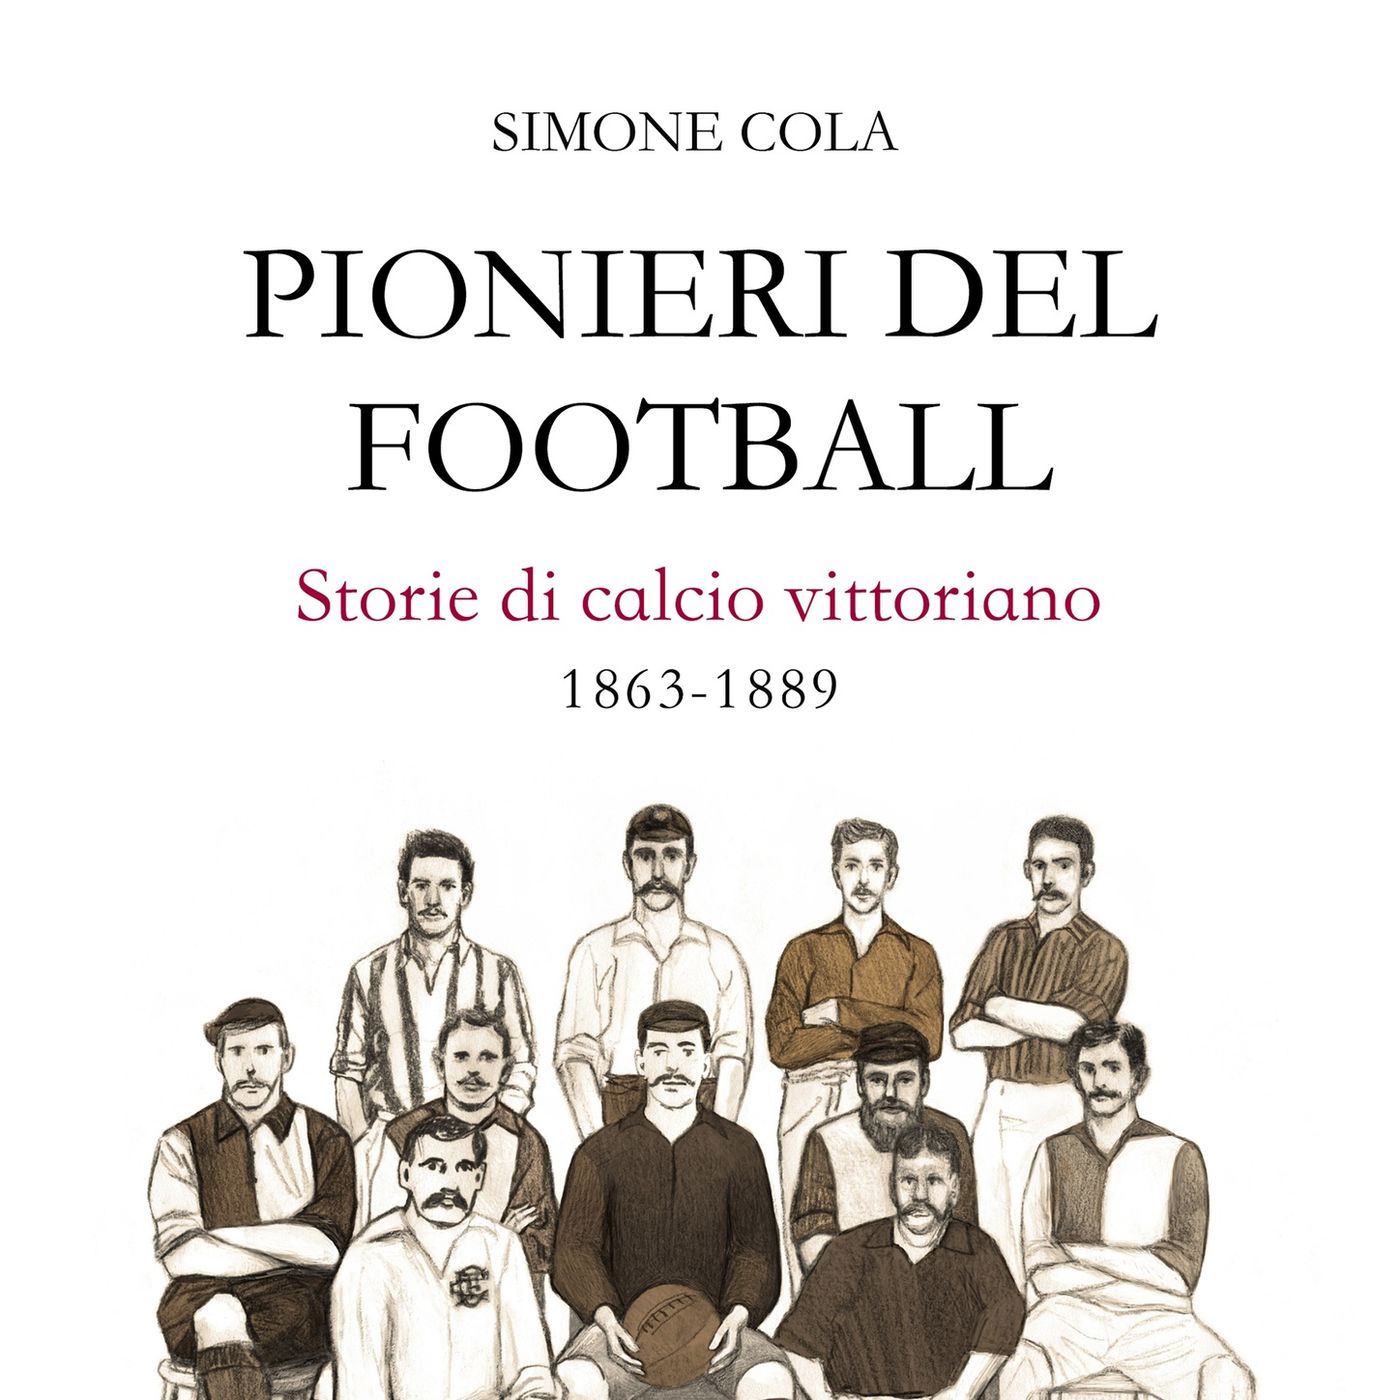 "Pionieri del football. Storie di calcio vittoriano 1863-1889." A talk with: Simone Cola